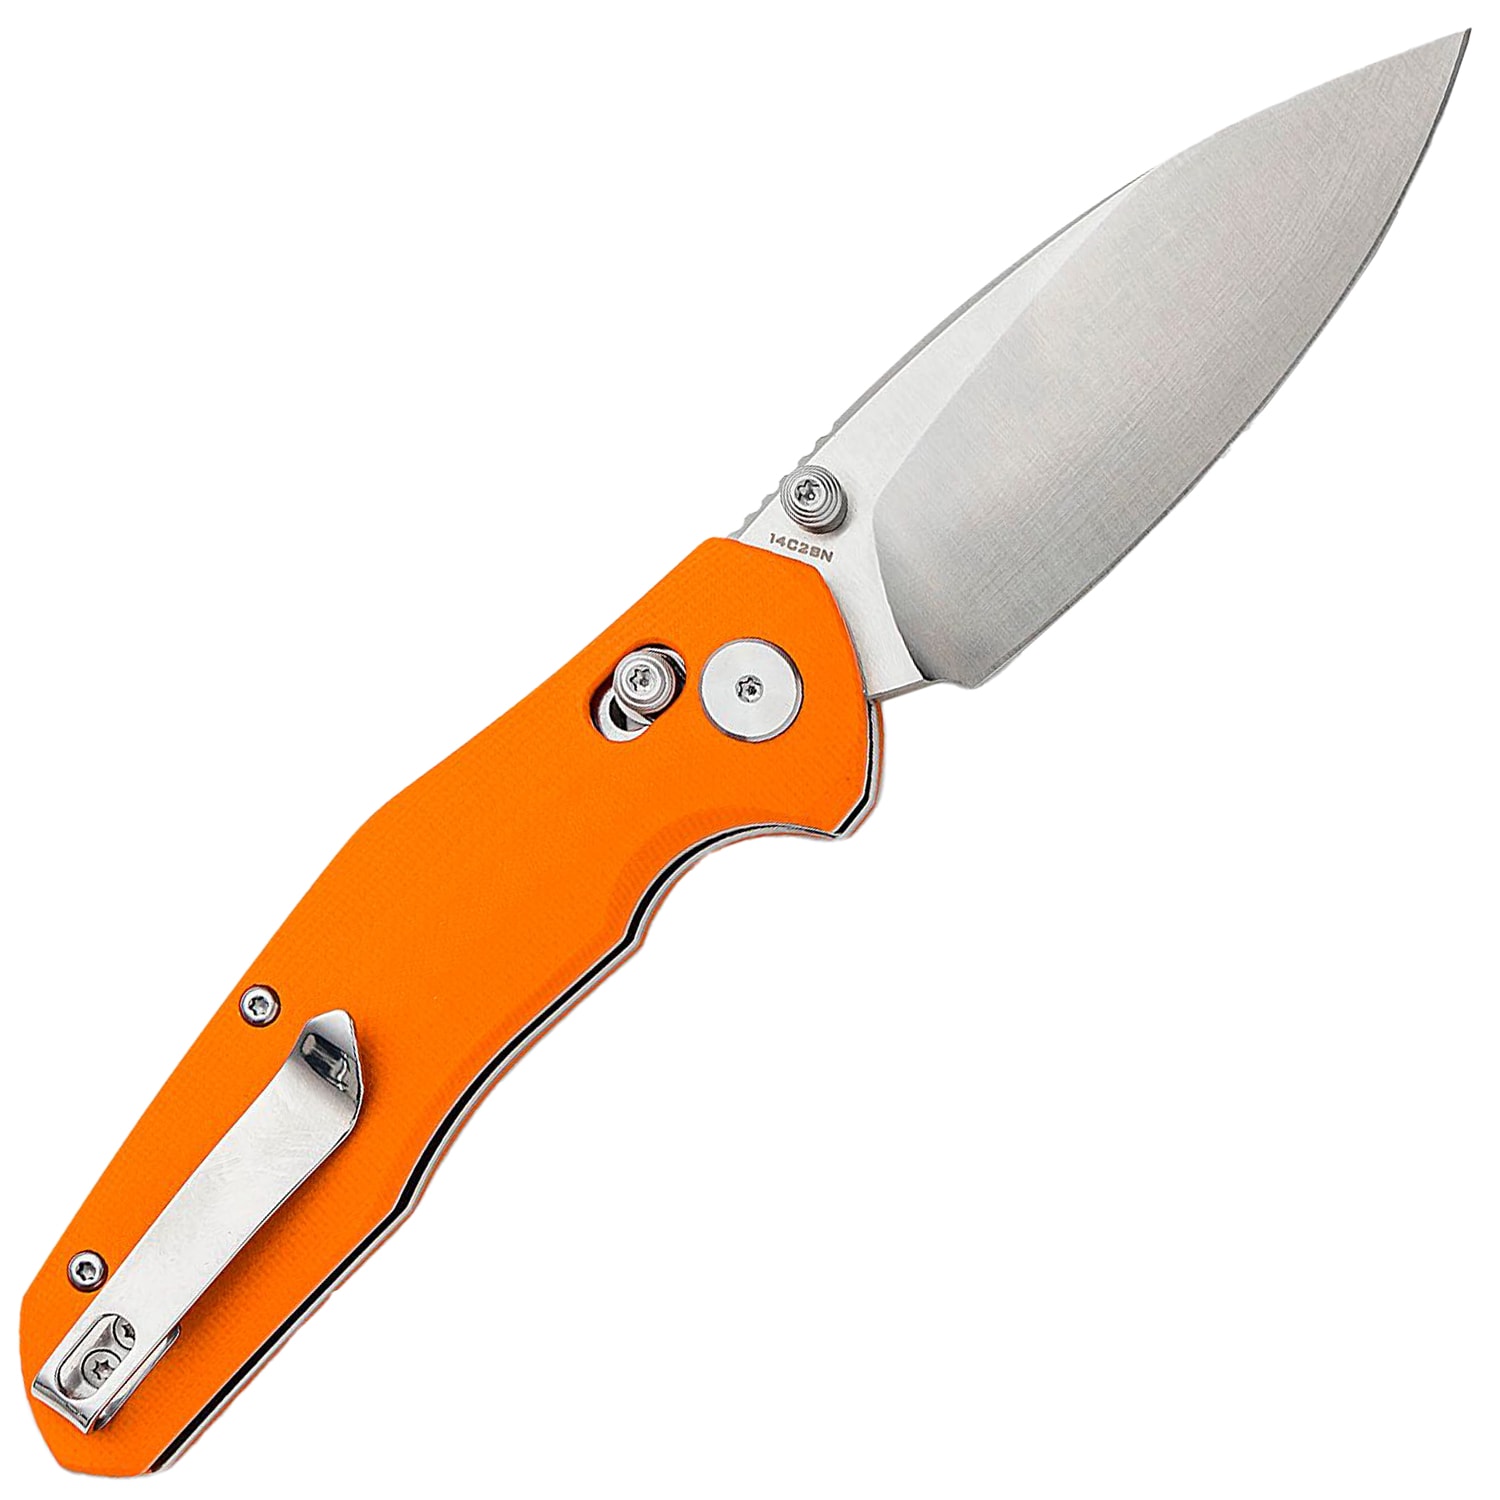 Nóż składany Bestechman Ronan Satin - Orange